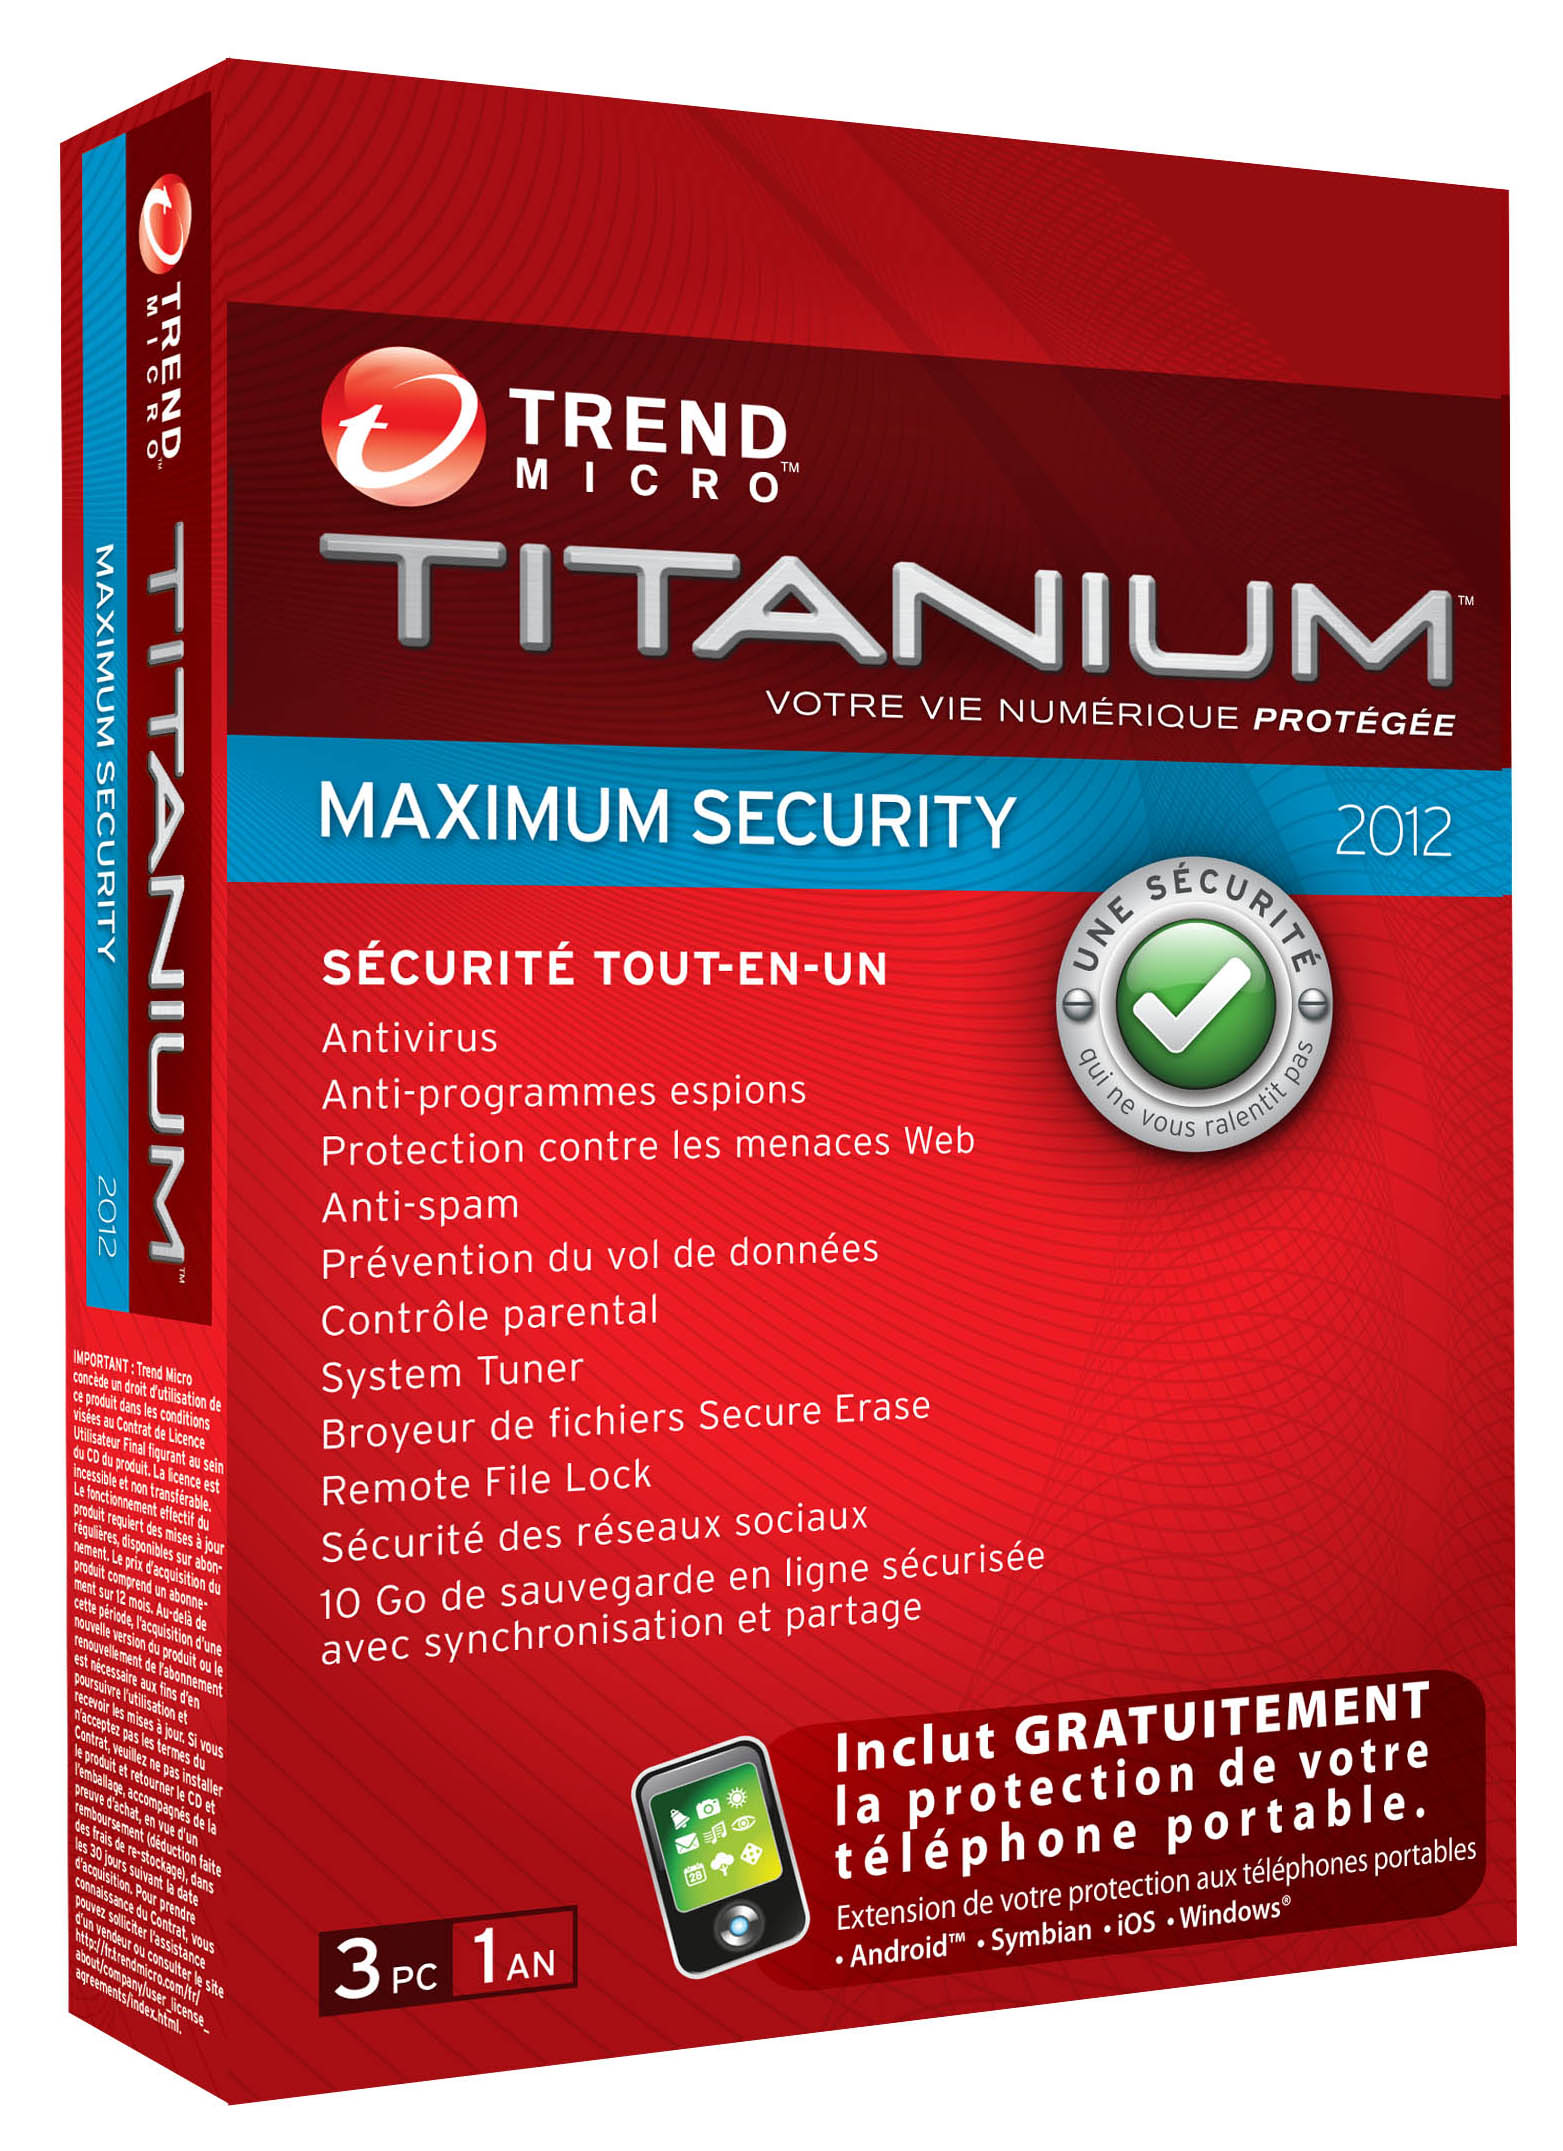 Titanium 2012 Internet security software